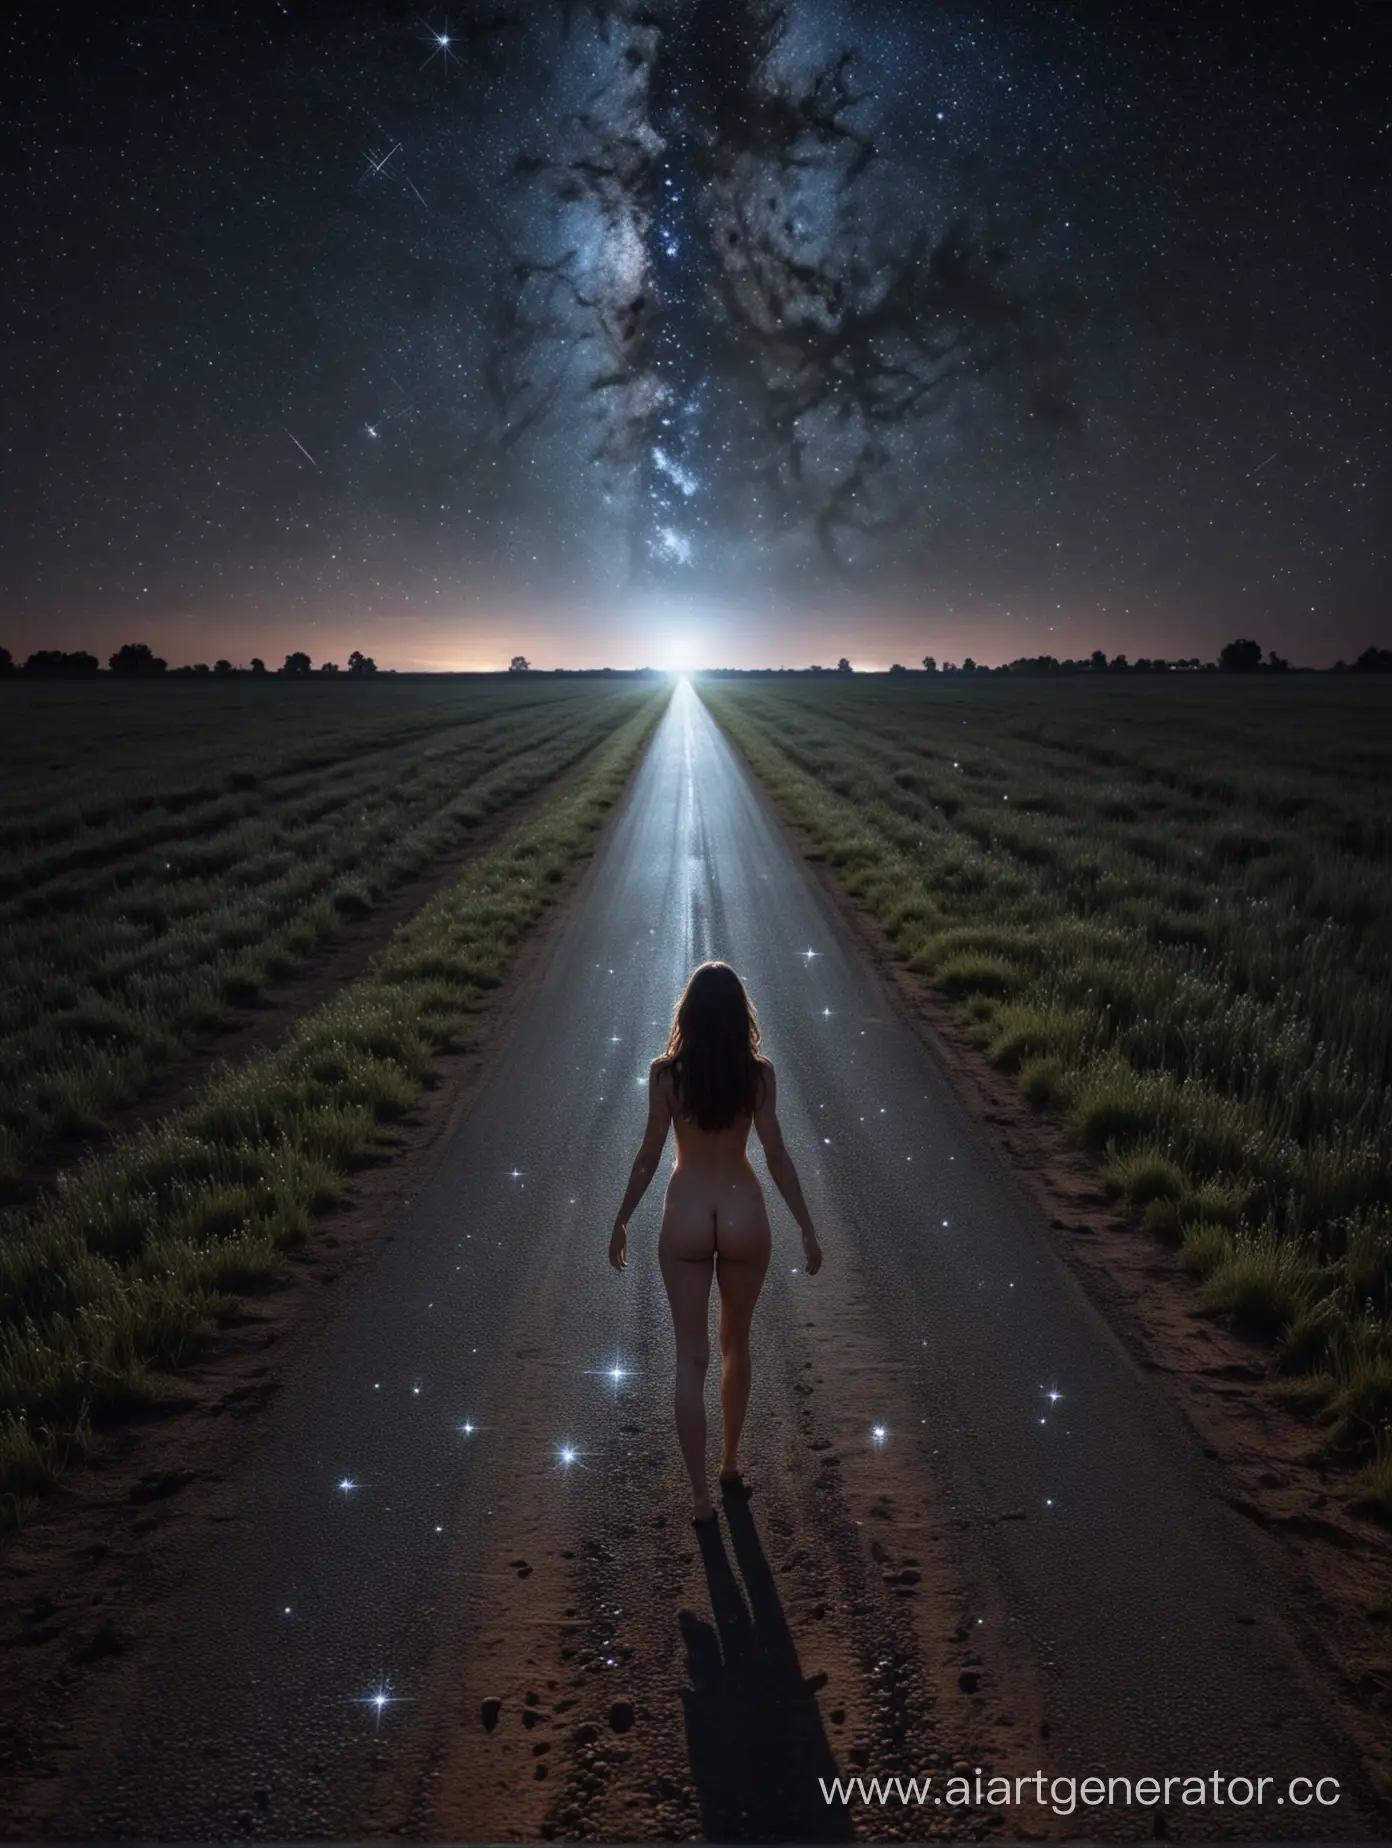 ночь, темнота, ночное небо усыпано звёздами, дорога сквозь поле, на переднем плане: посередине дороги ионизирующее магнитное поле в форме обнажённой женщины